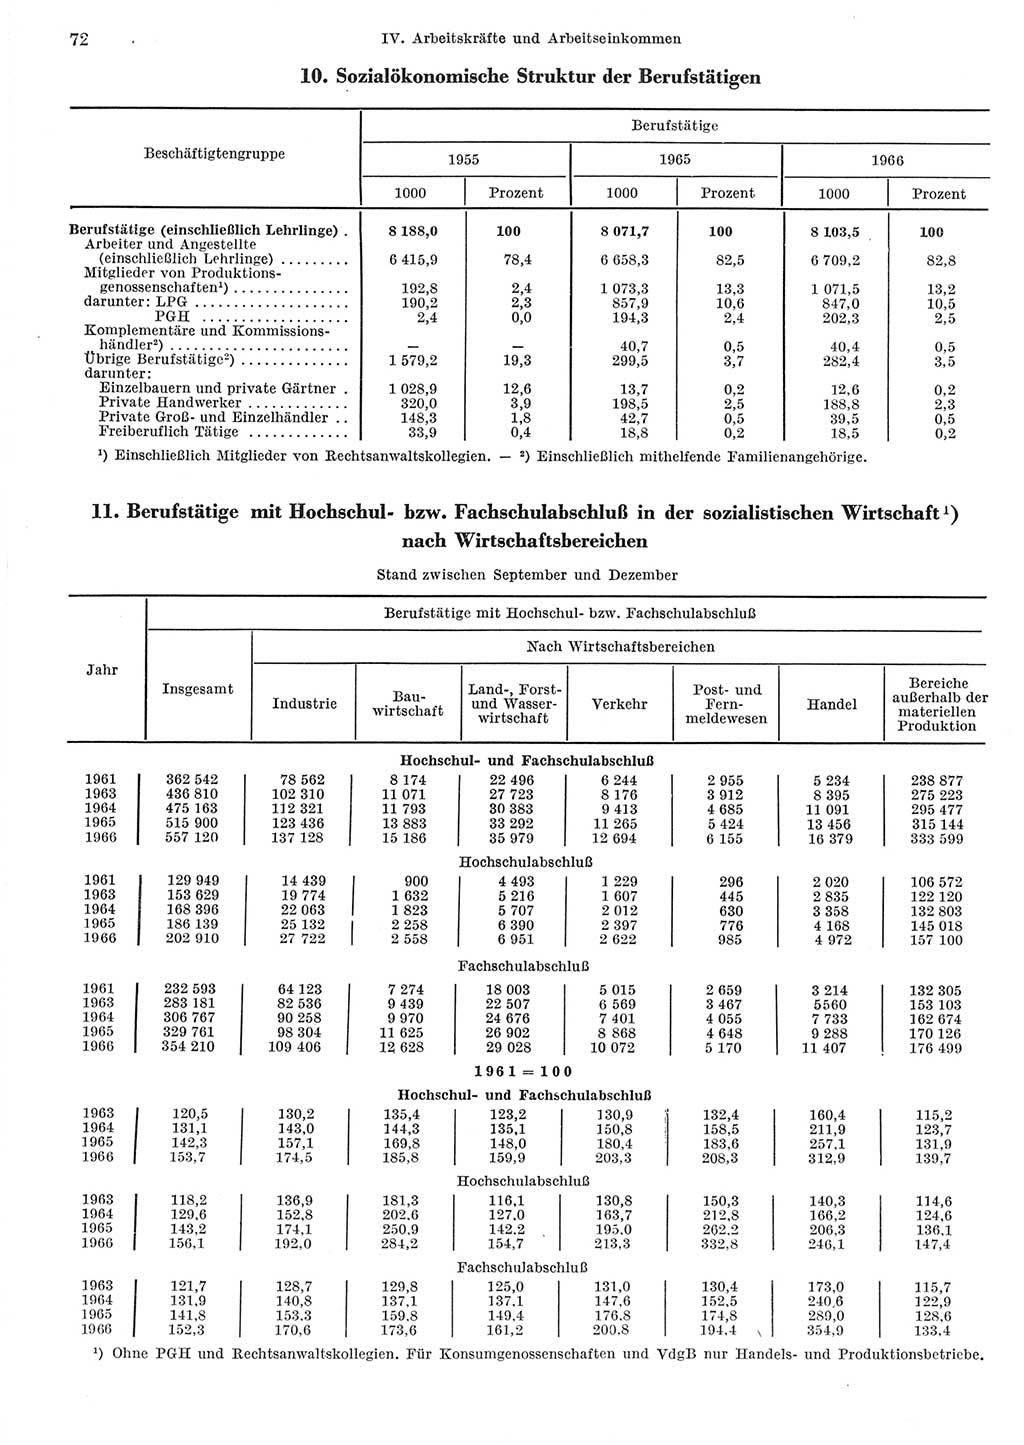 Statistisches Jahrbuch der Deutschen Demokratischen Republik (DDR) 1967, Seite 72 (Stat. Jb. DDR 1967, S. 72)